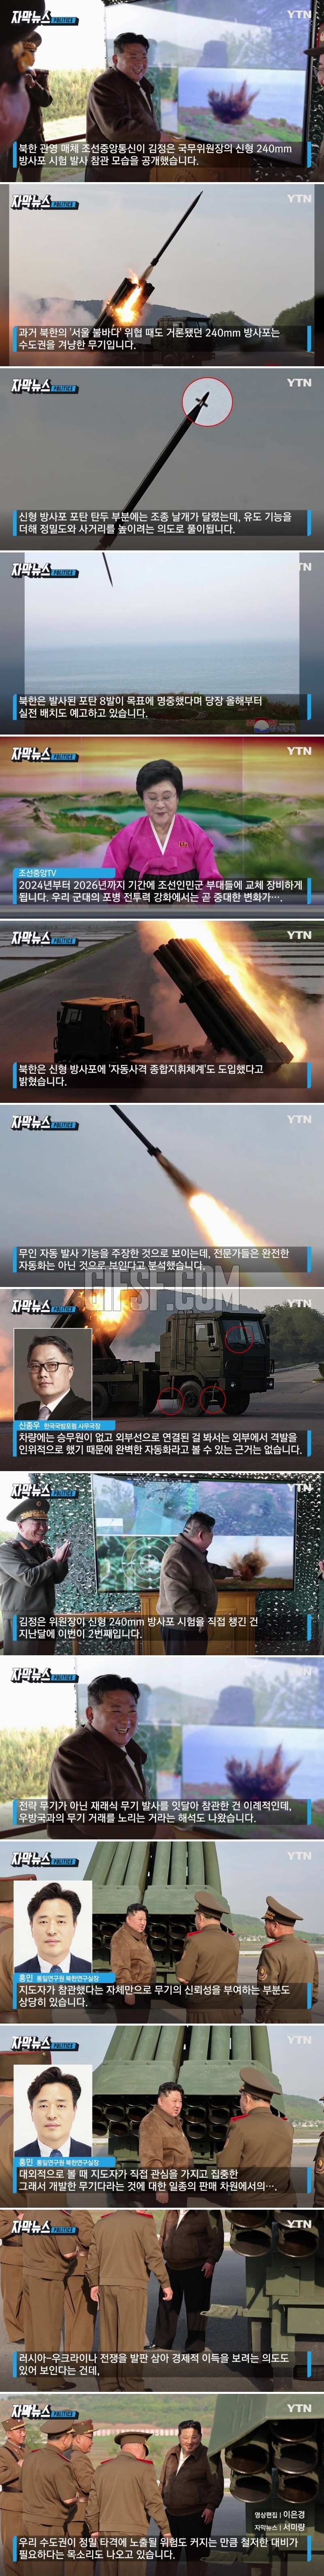 북한이 도입한 신형 방사.',서울 불바다', 위협하던 무기.jpg